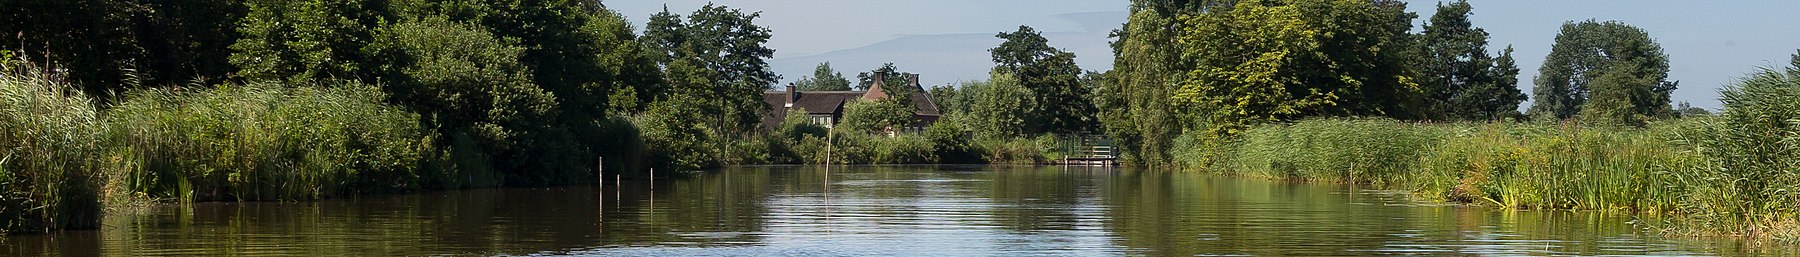 Woerdense Verlaat, river Meije near the Bosweg photo12 2017-07-09 11.01 pagebanner.jpg